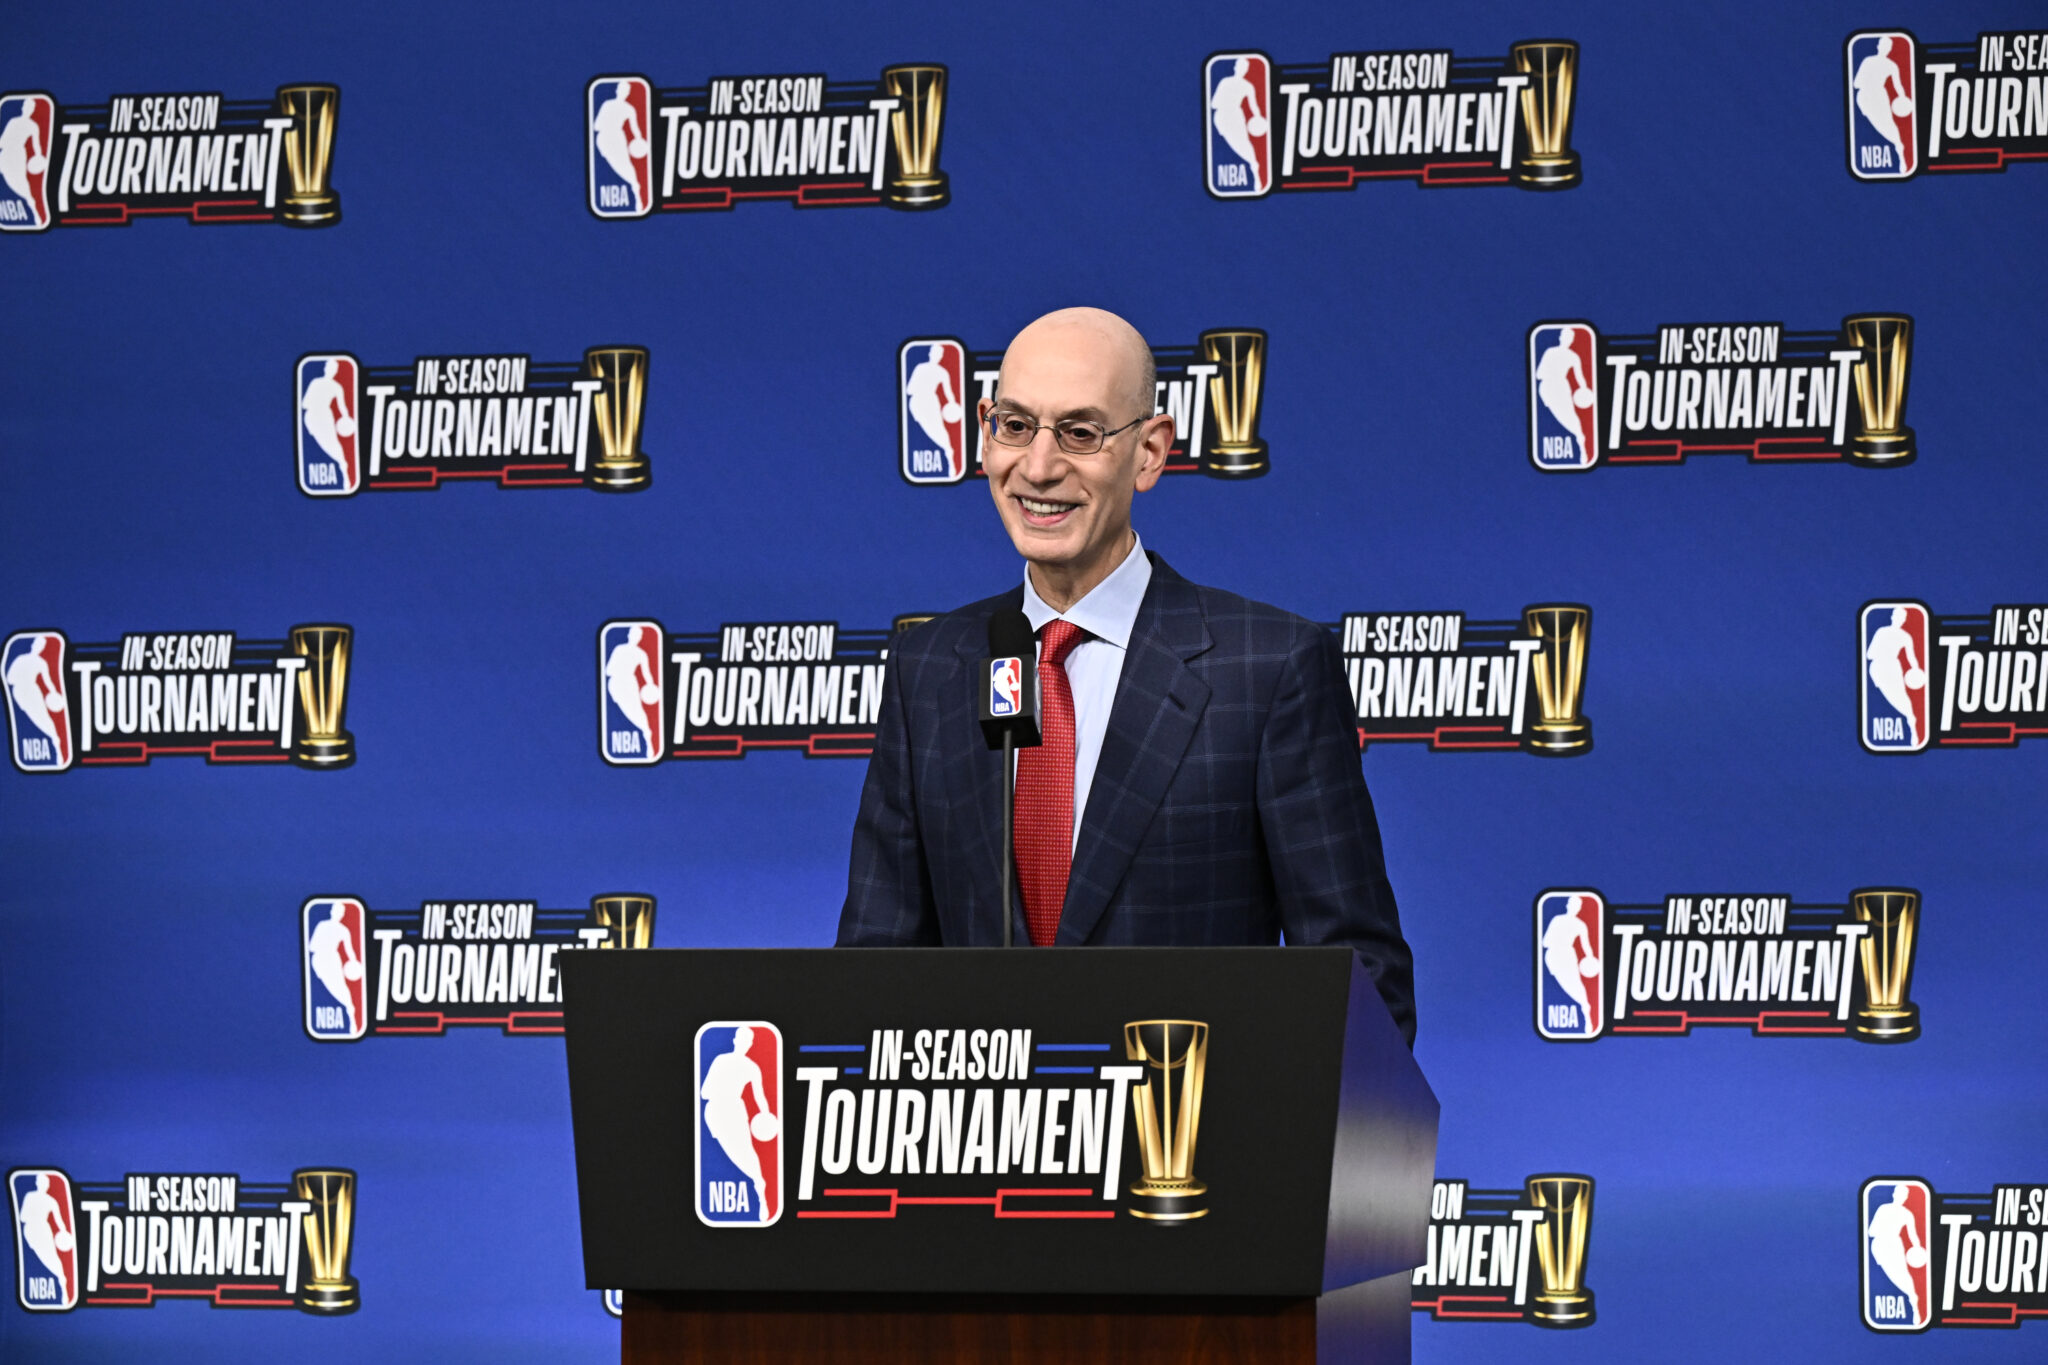 ¿Cómo puede mejorar el In-Season Tournament? Propuestas para cambiar la Copa NBA